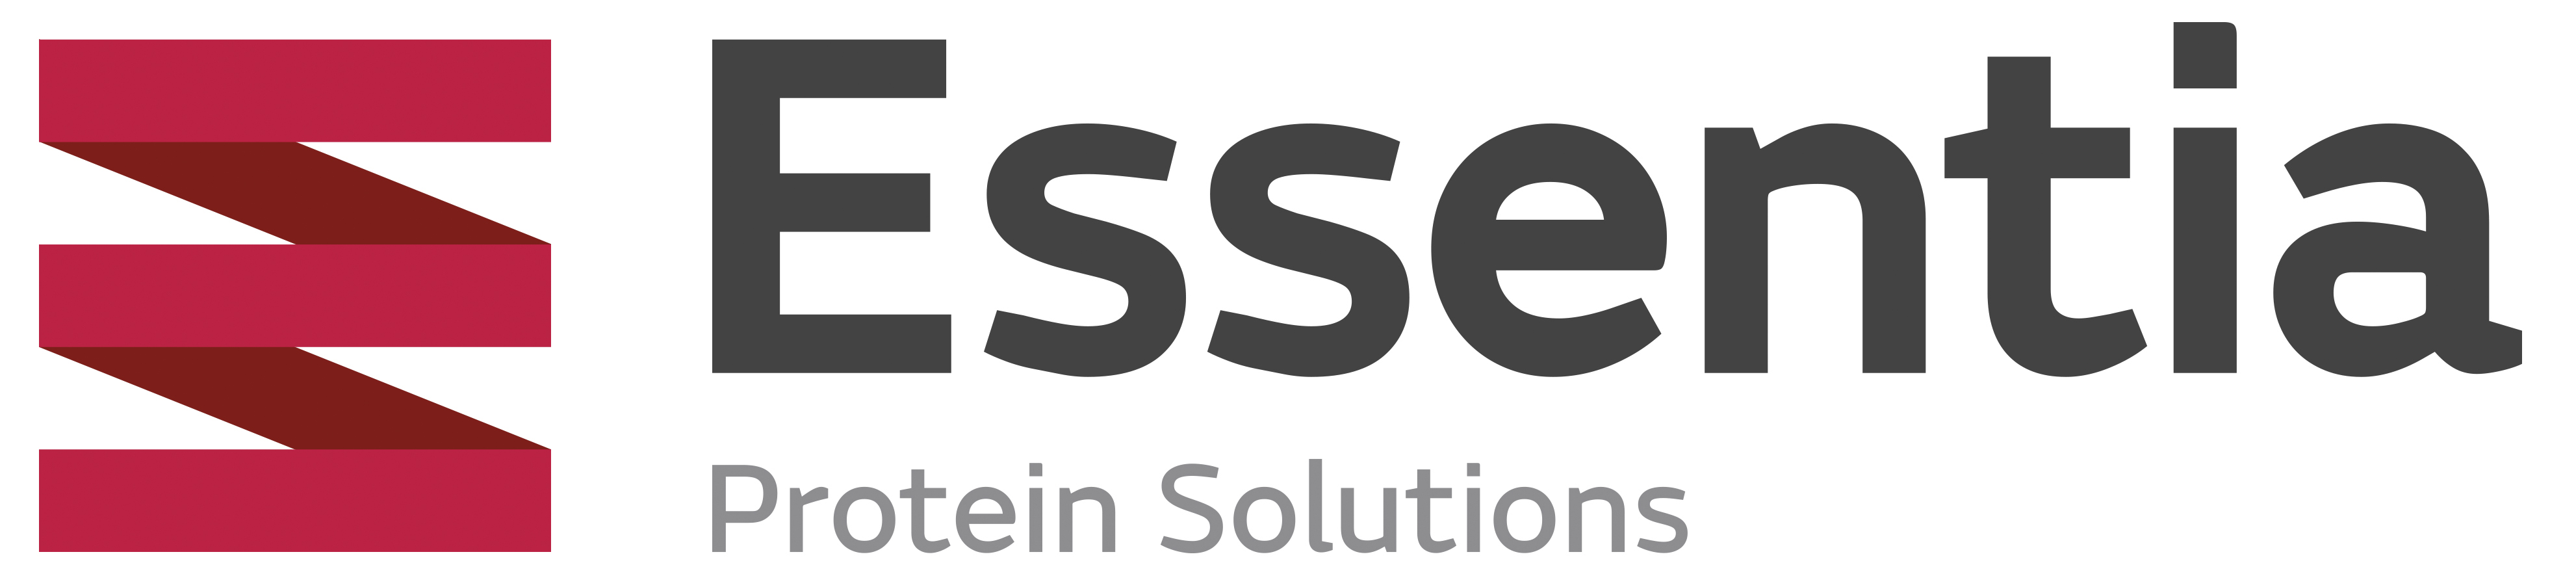 Essentia Protein Solutions.